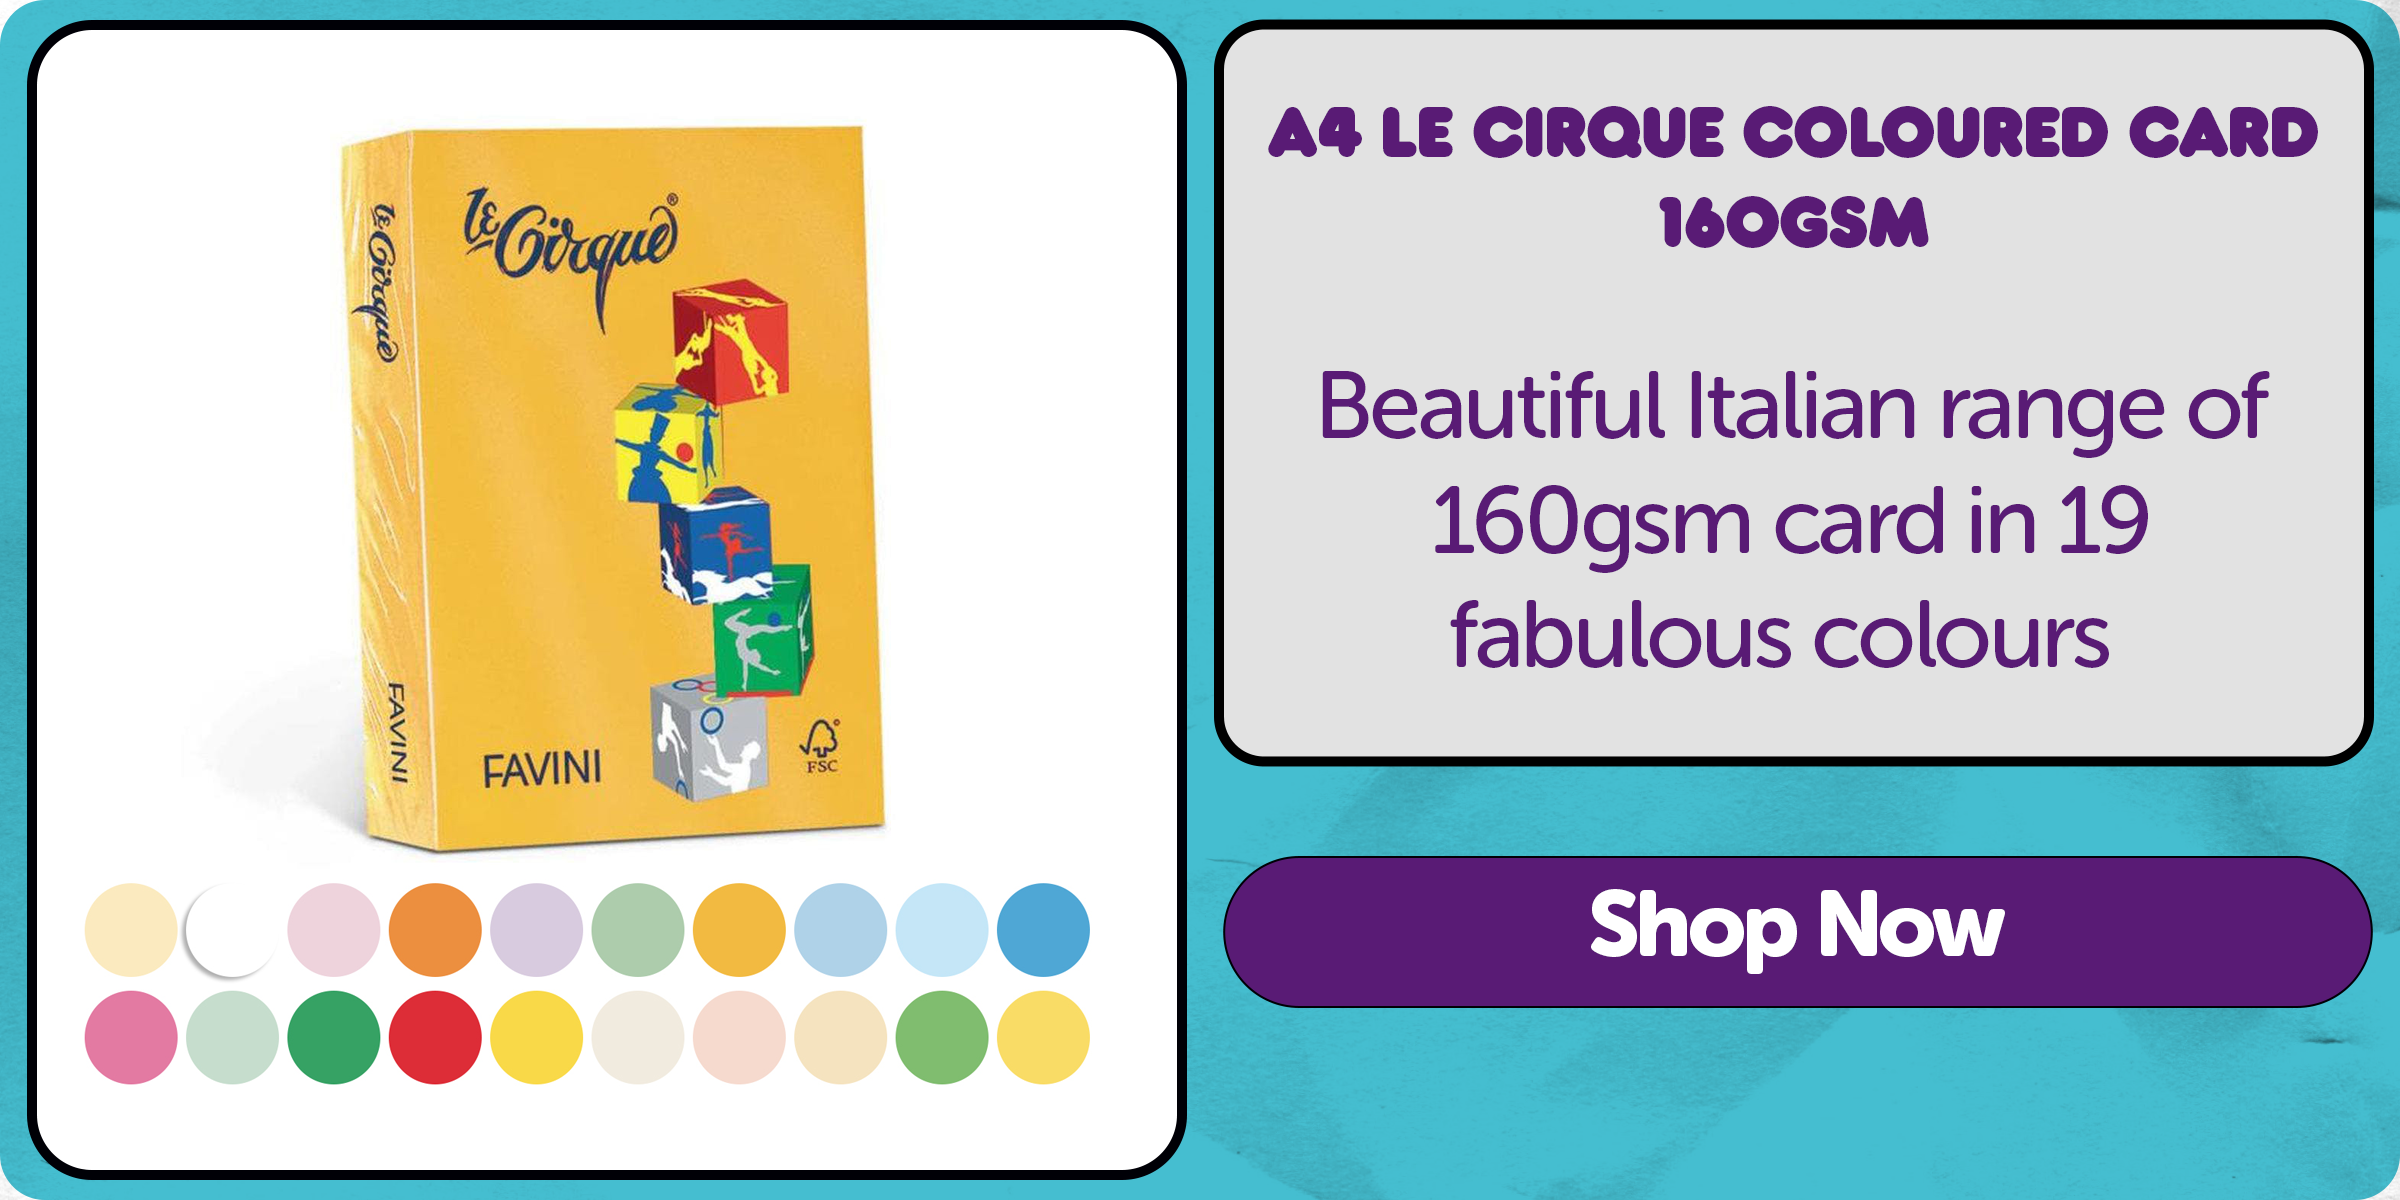 A4 Le Cirque Coloured Card 160gsm